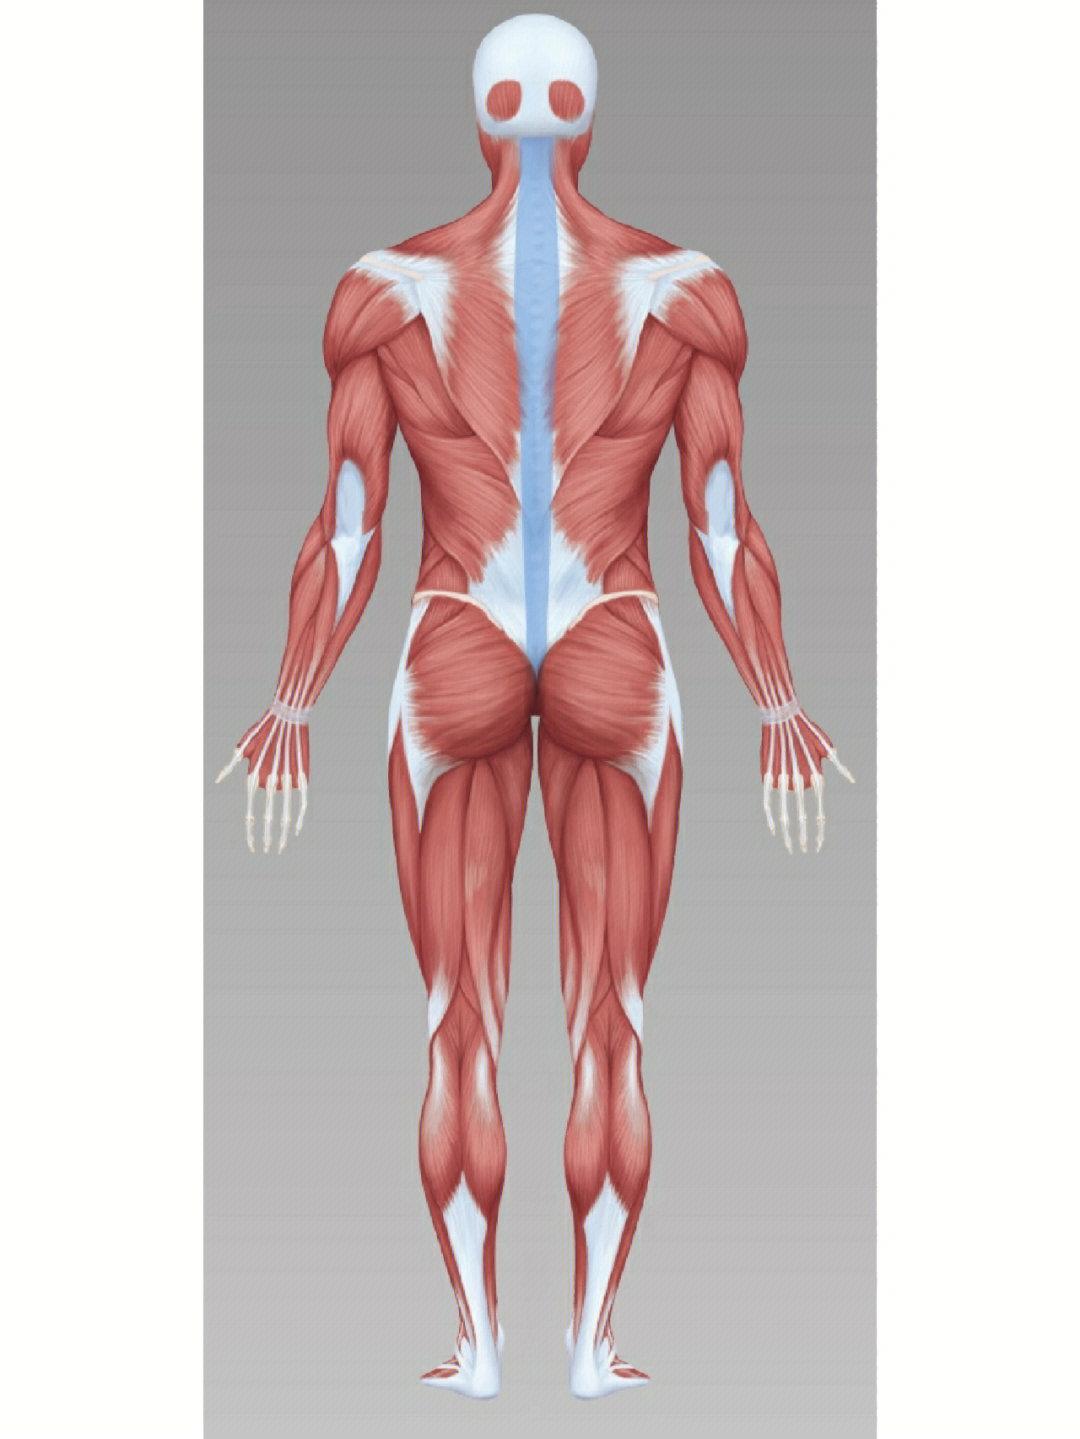 竖脊肌下部下背部肌肉力量加强与拉伸